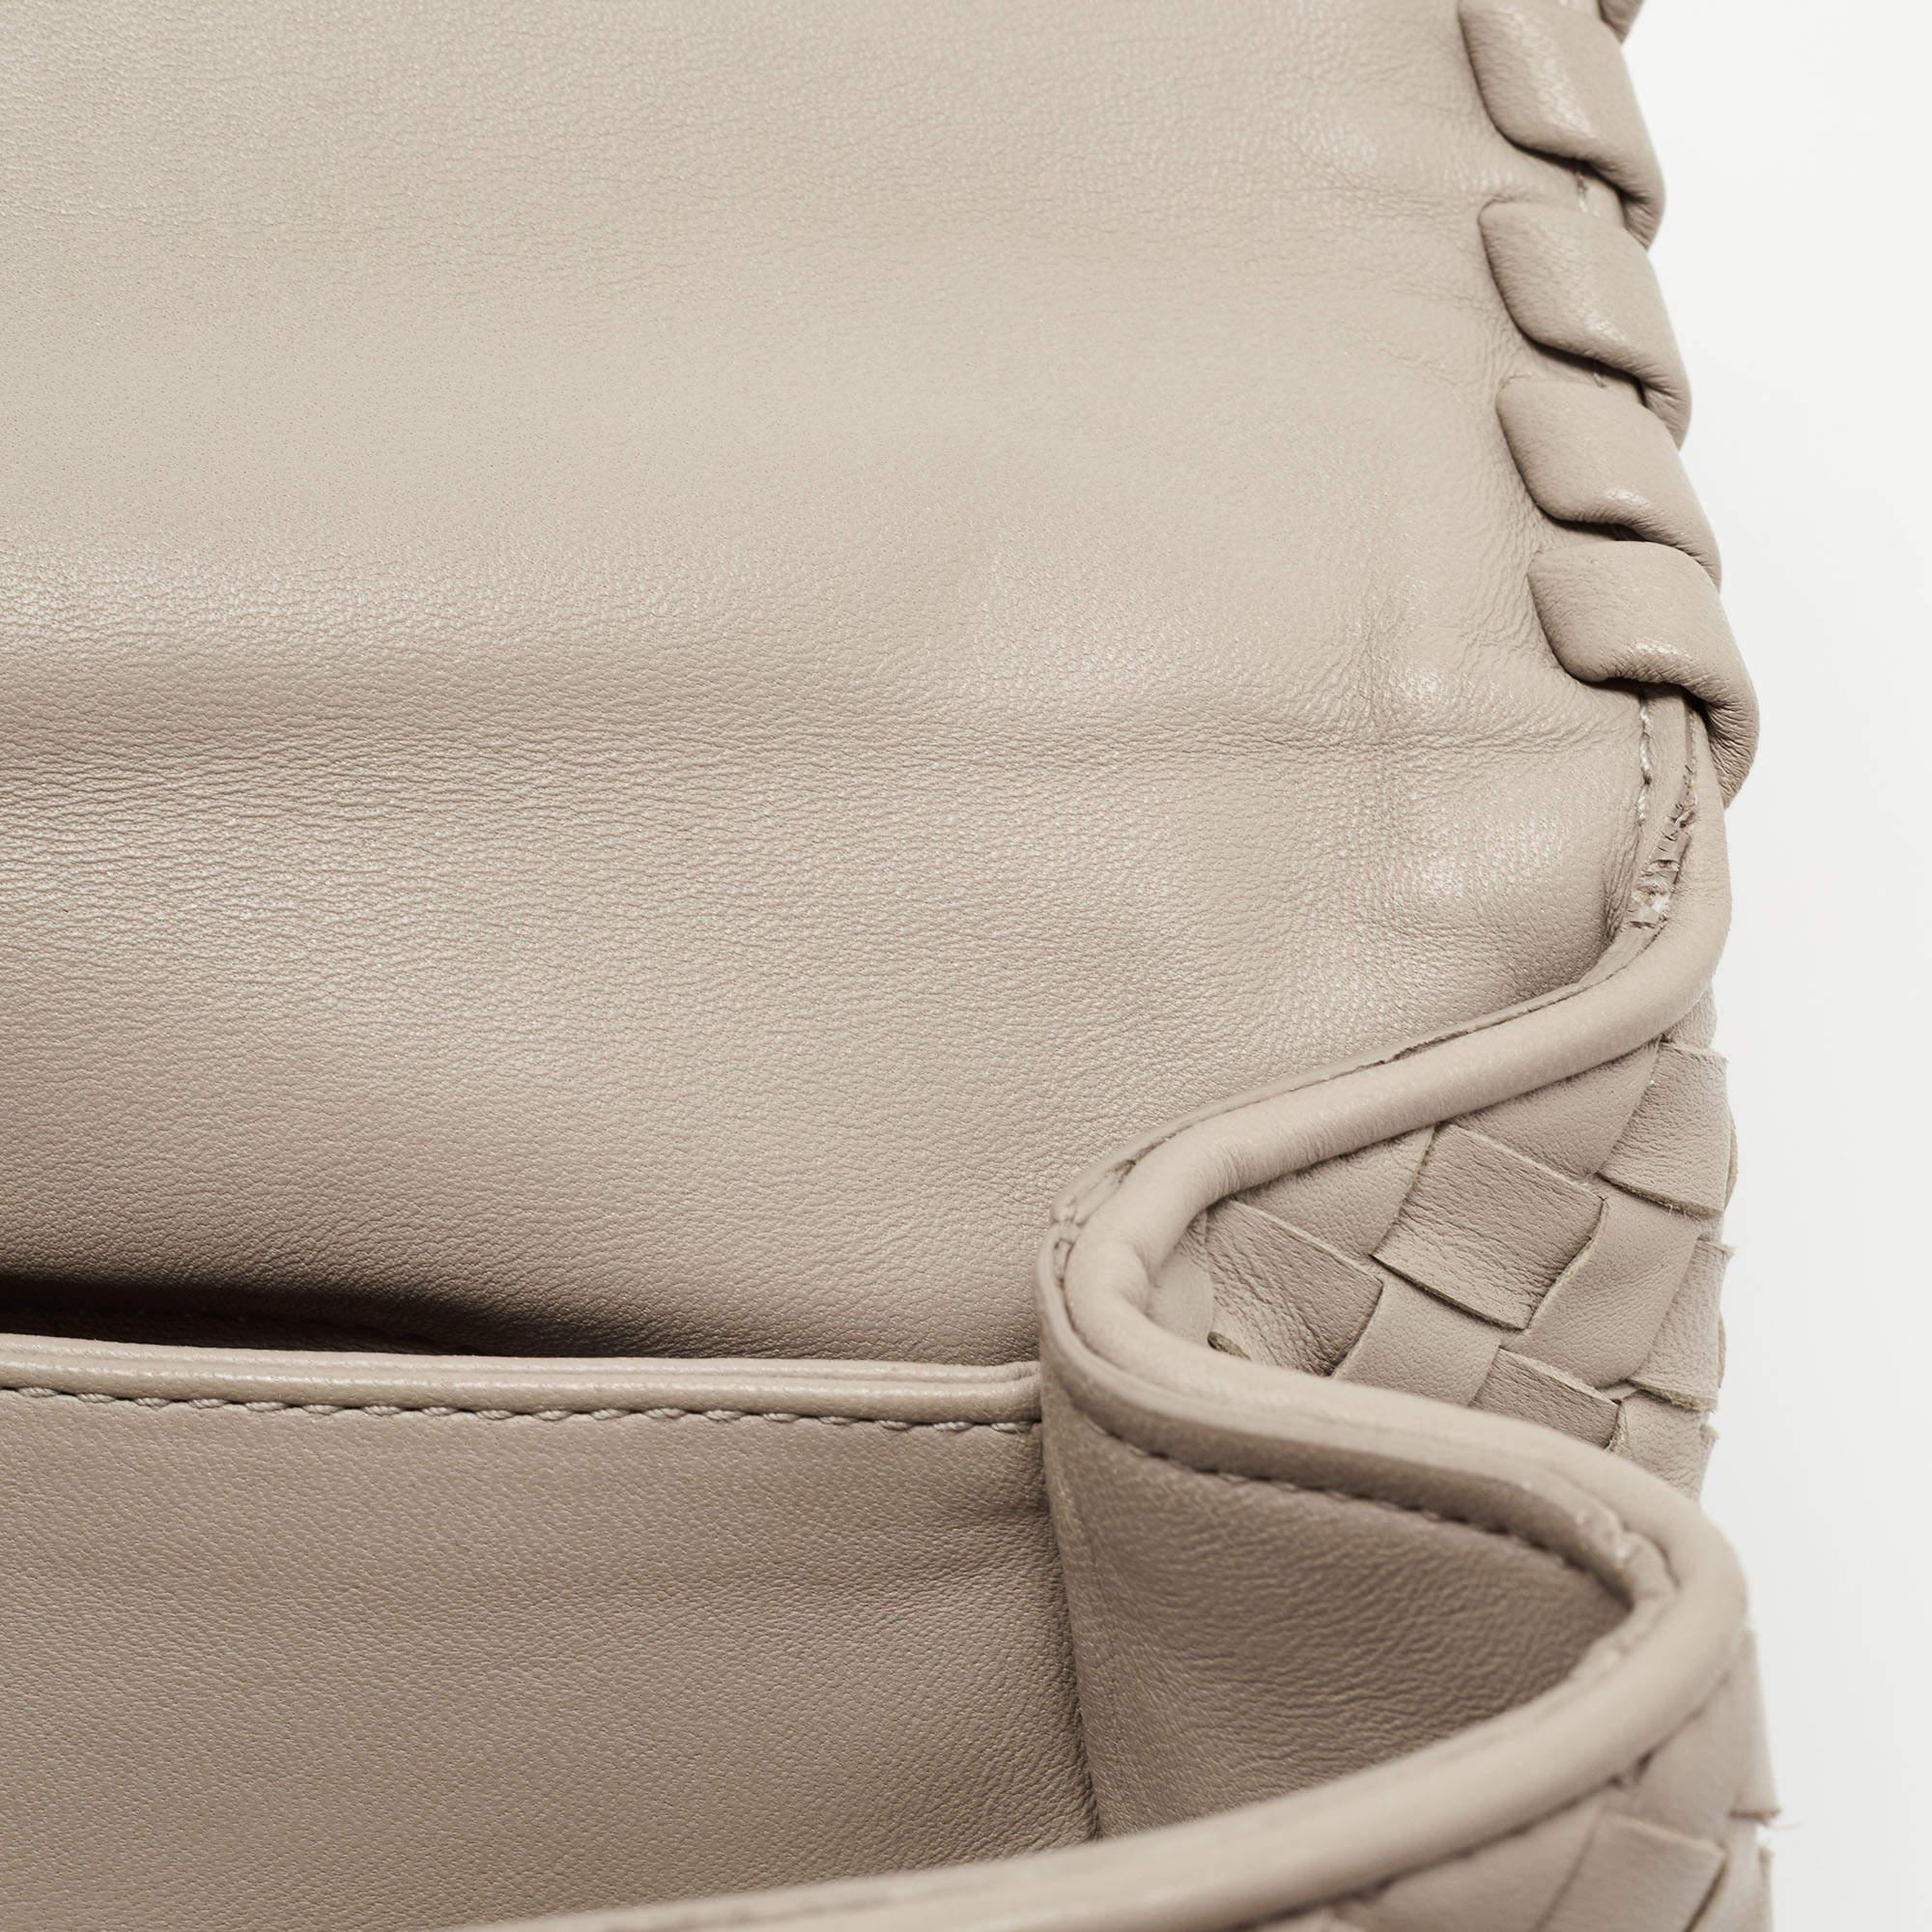 Bottega Veneta Beige Intrecciato Leather Olimpia Top Handle Bag 11